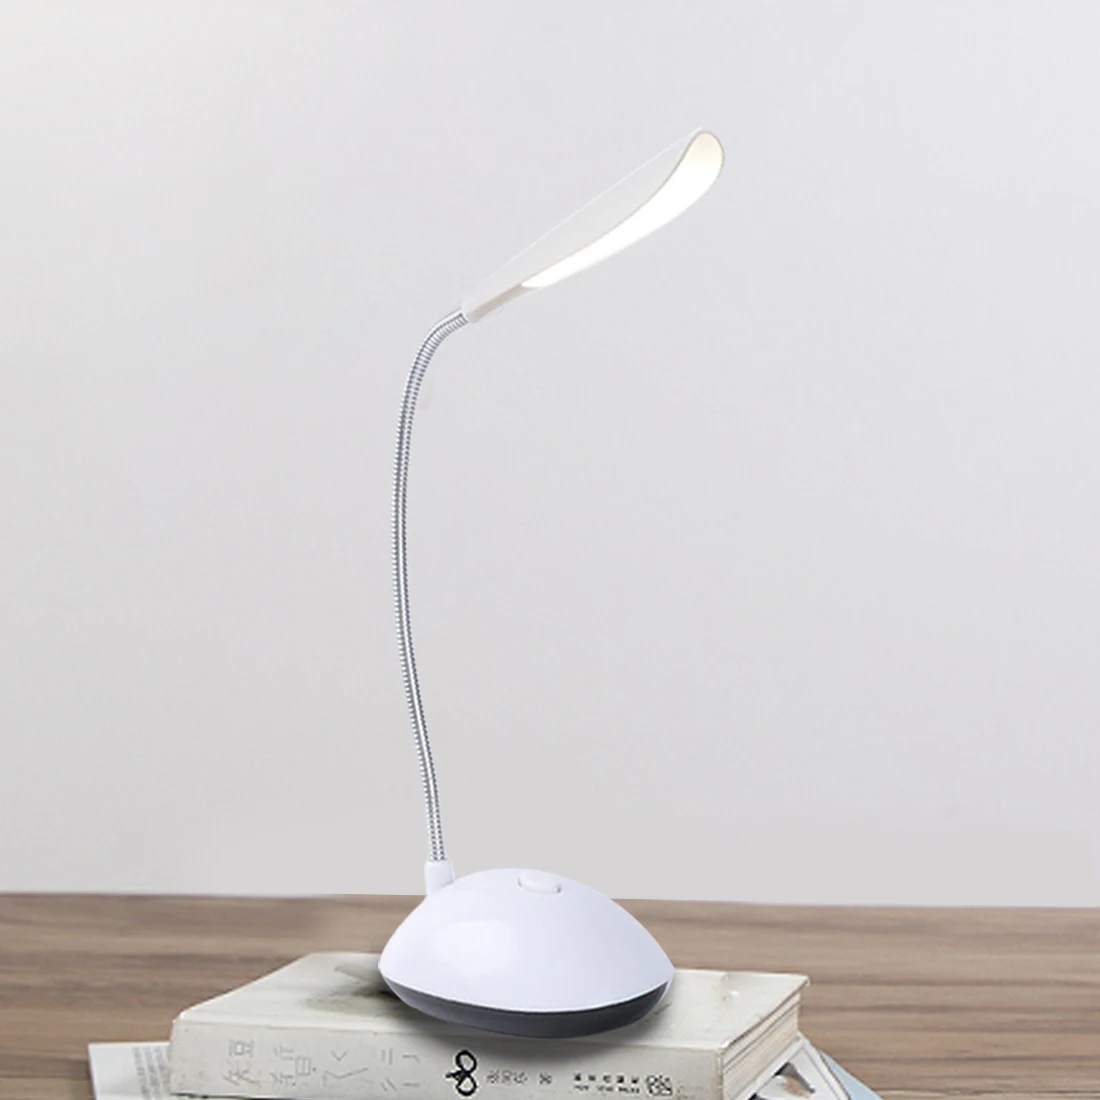 Складной креативный 4 светодиодный s Didoe Настольный светильник, мини светодиодный Настольный светильник с высоким люменом, настольный светильник с защитой глаз, питание от батареек AAA